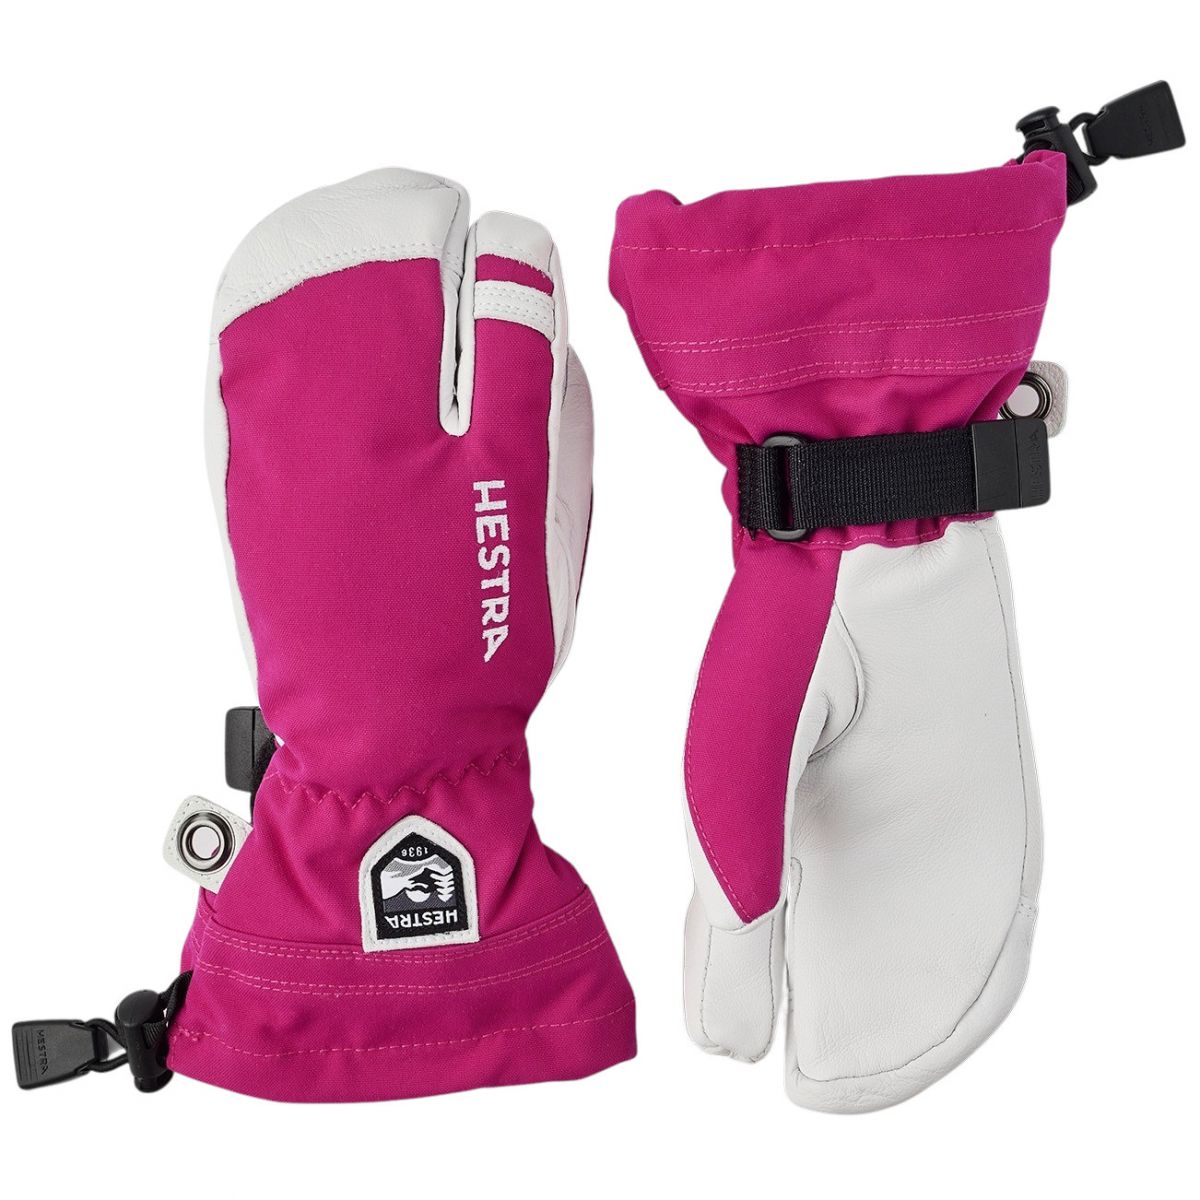 Brug Hestra Army Leather Heli Ski, 3-finger skihandsker, junior, pink til en forbedret oplevelse